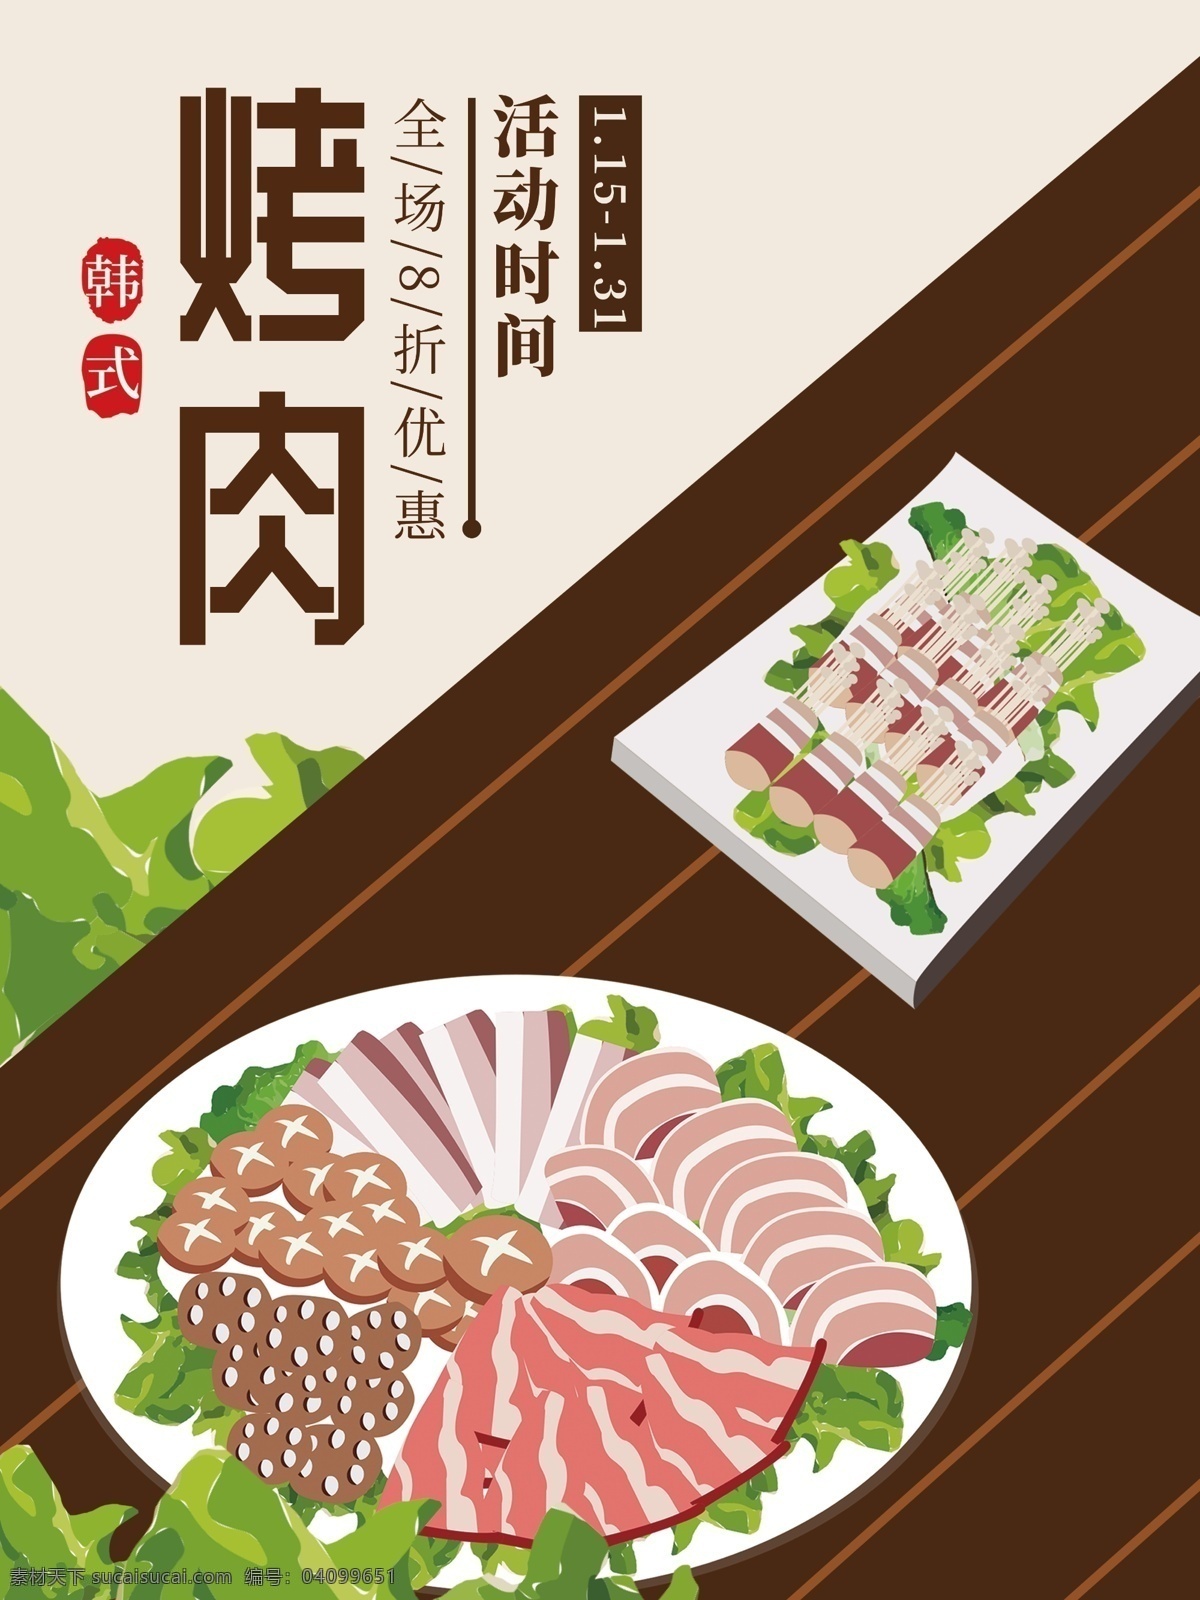 原创 手绘 插画 韩式 烤肉 促销 海报 韩式烤肉 生菜 美食海报 美食促销海报 手绘烤肉拼盘 烤肉促销海报